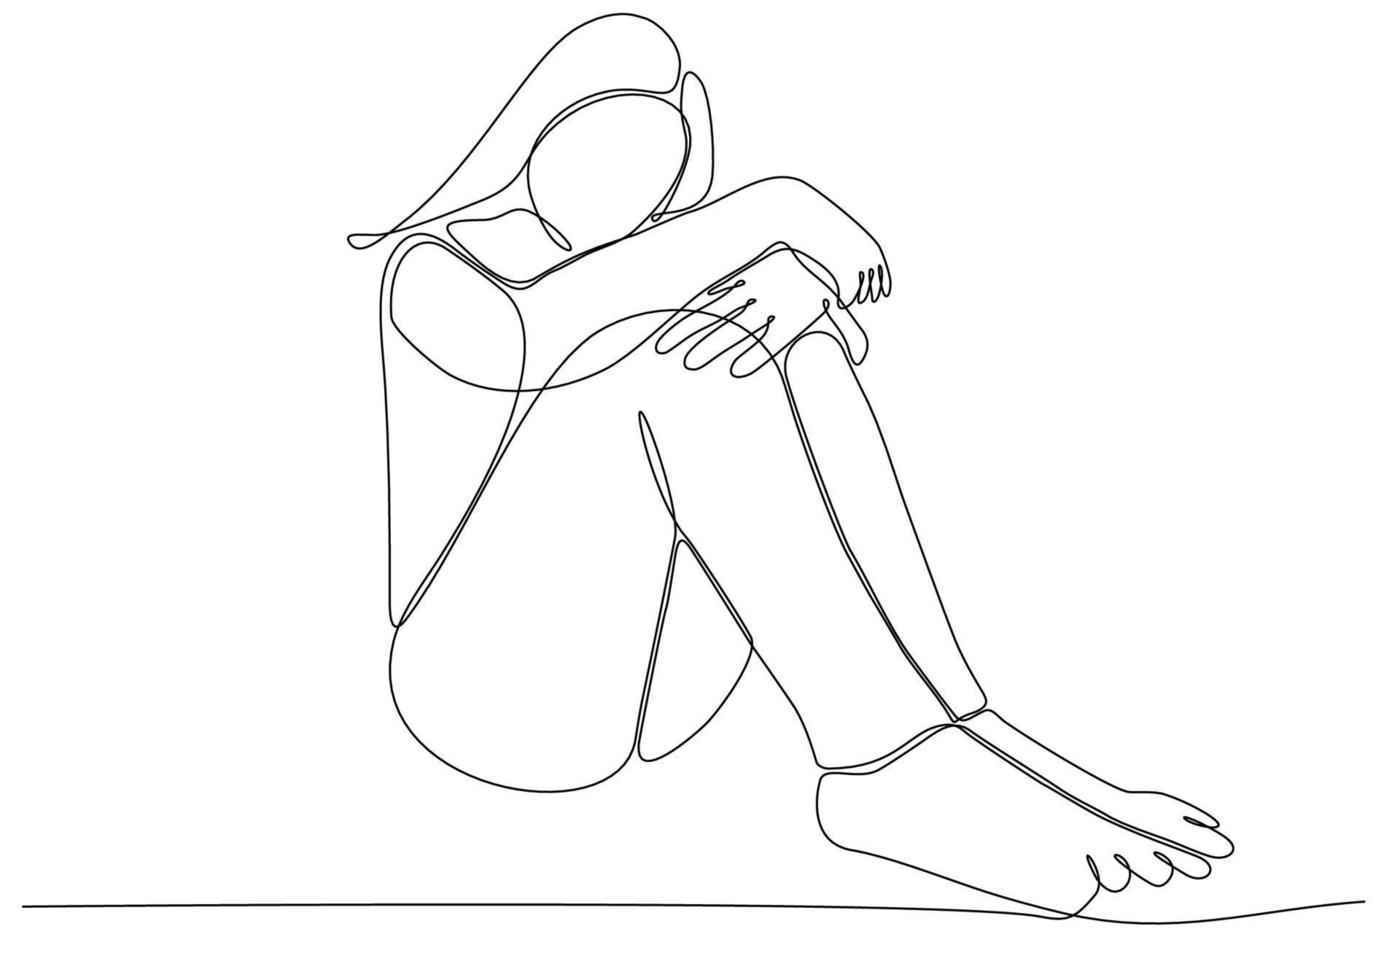 continue lijntekening van een jonge vrouw die zich verdrietig, moe en bezorgd voelt en lijdt aan depressie in de geestelijke gezondheid vectorillustratie vector